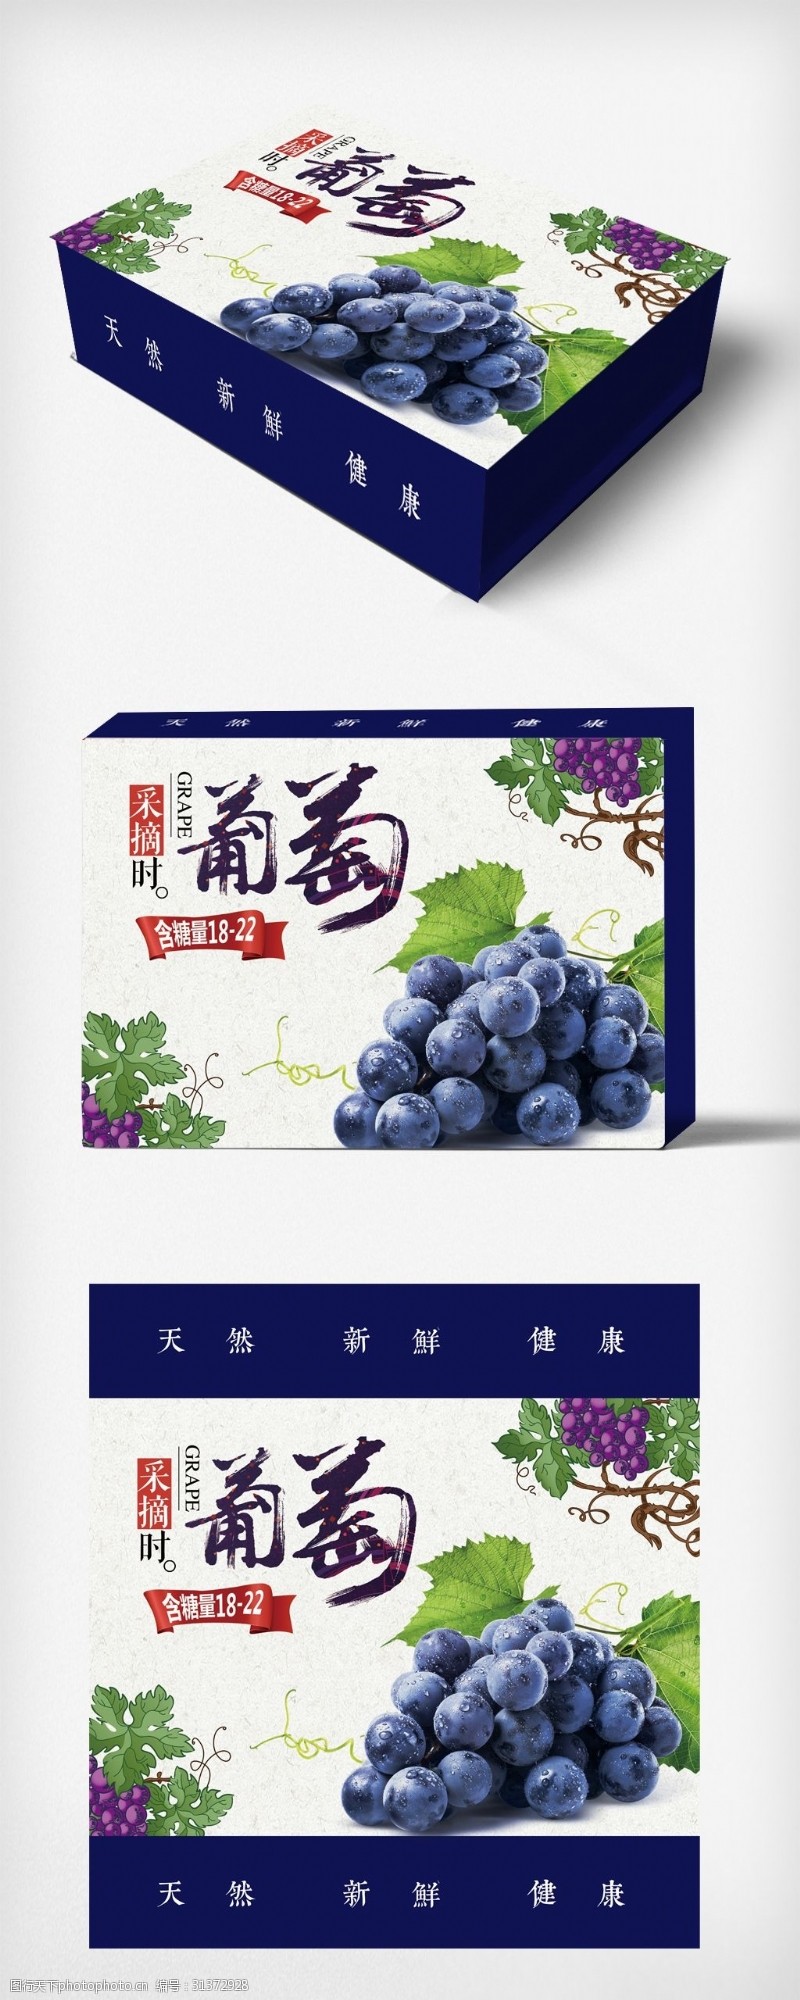 水果葡萄手提包装礼盒设计模板